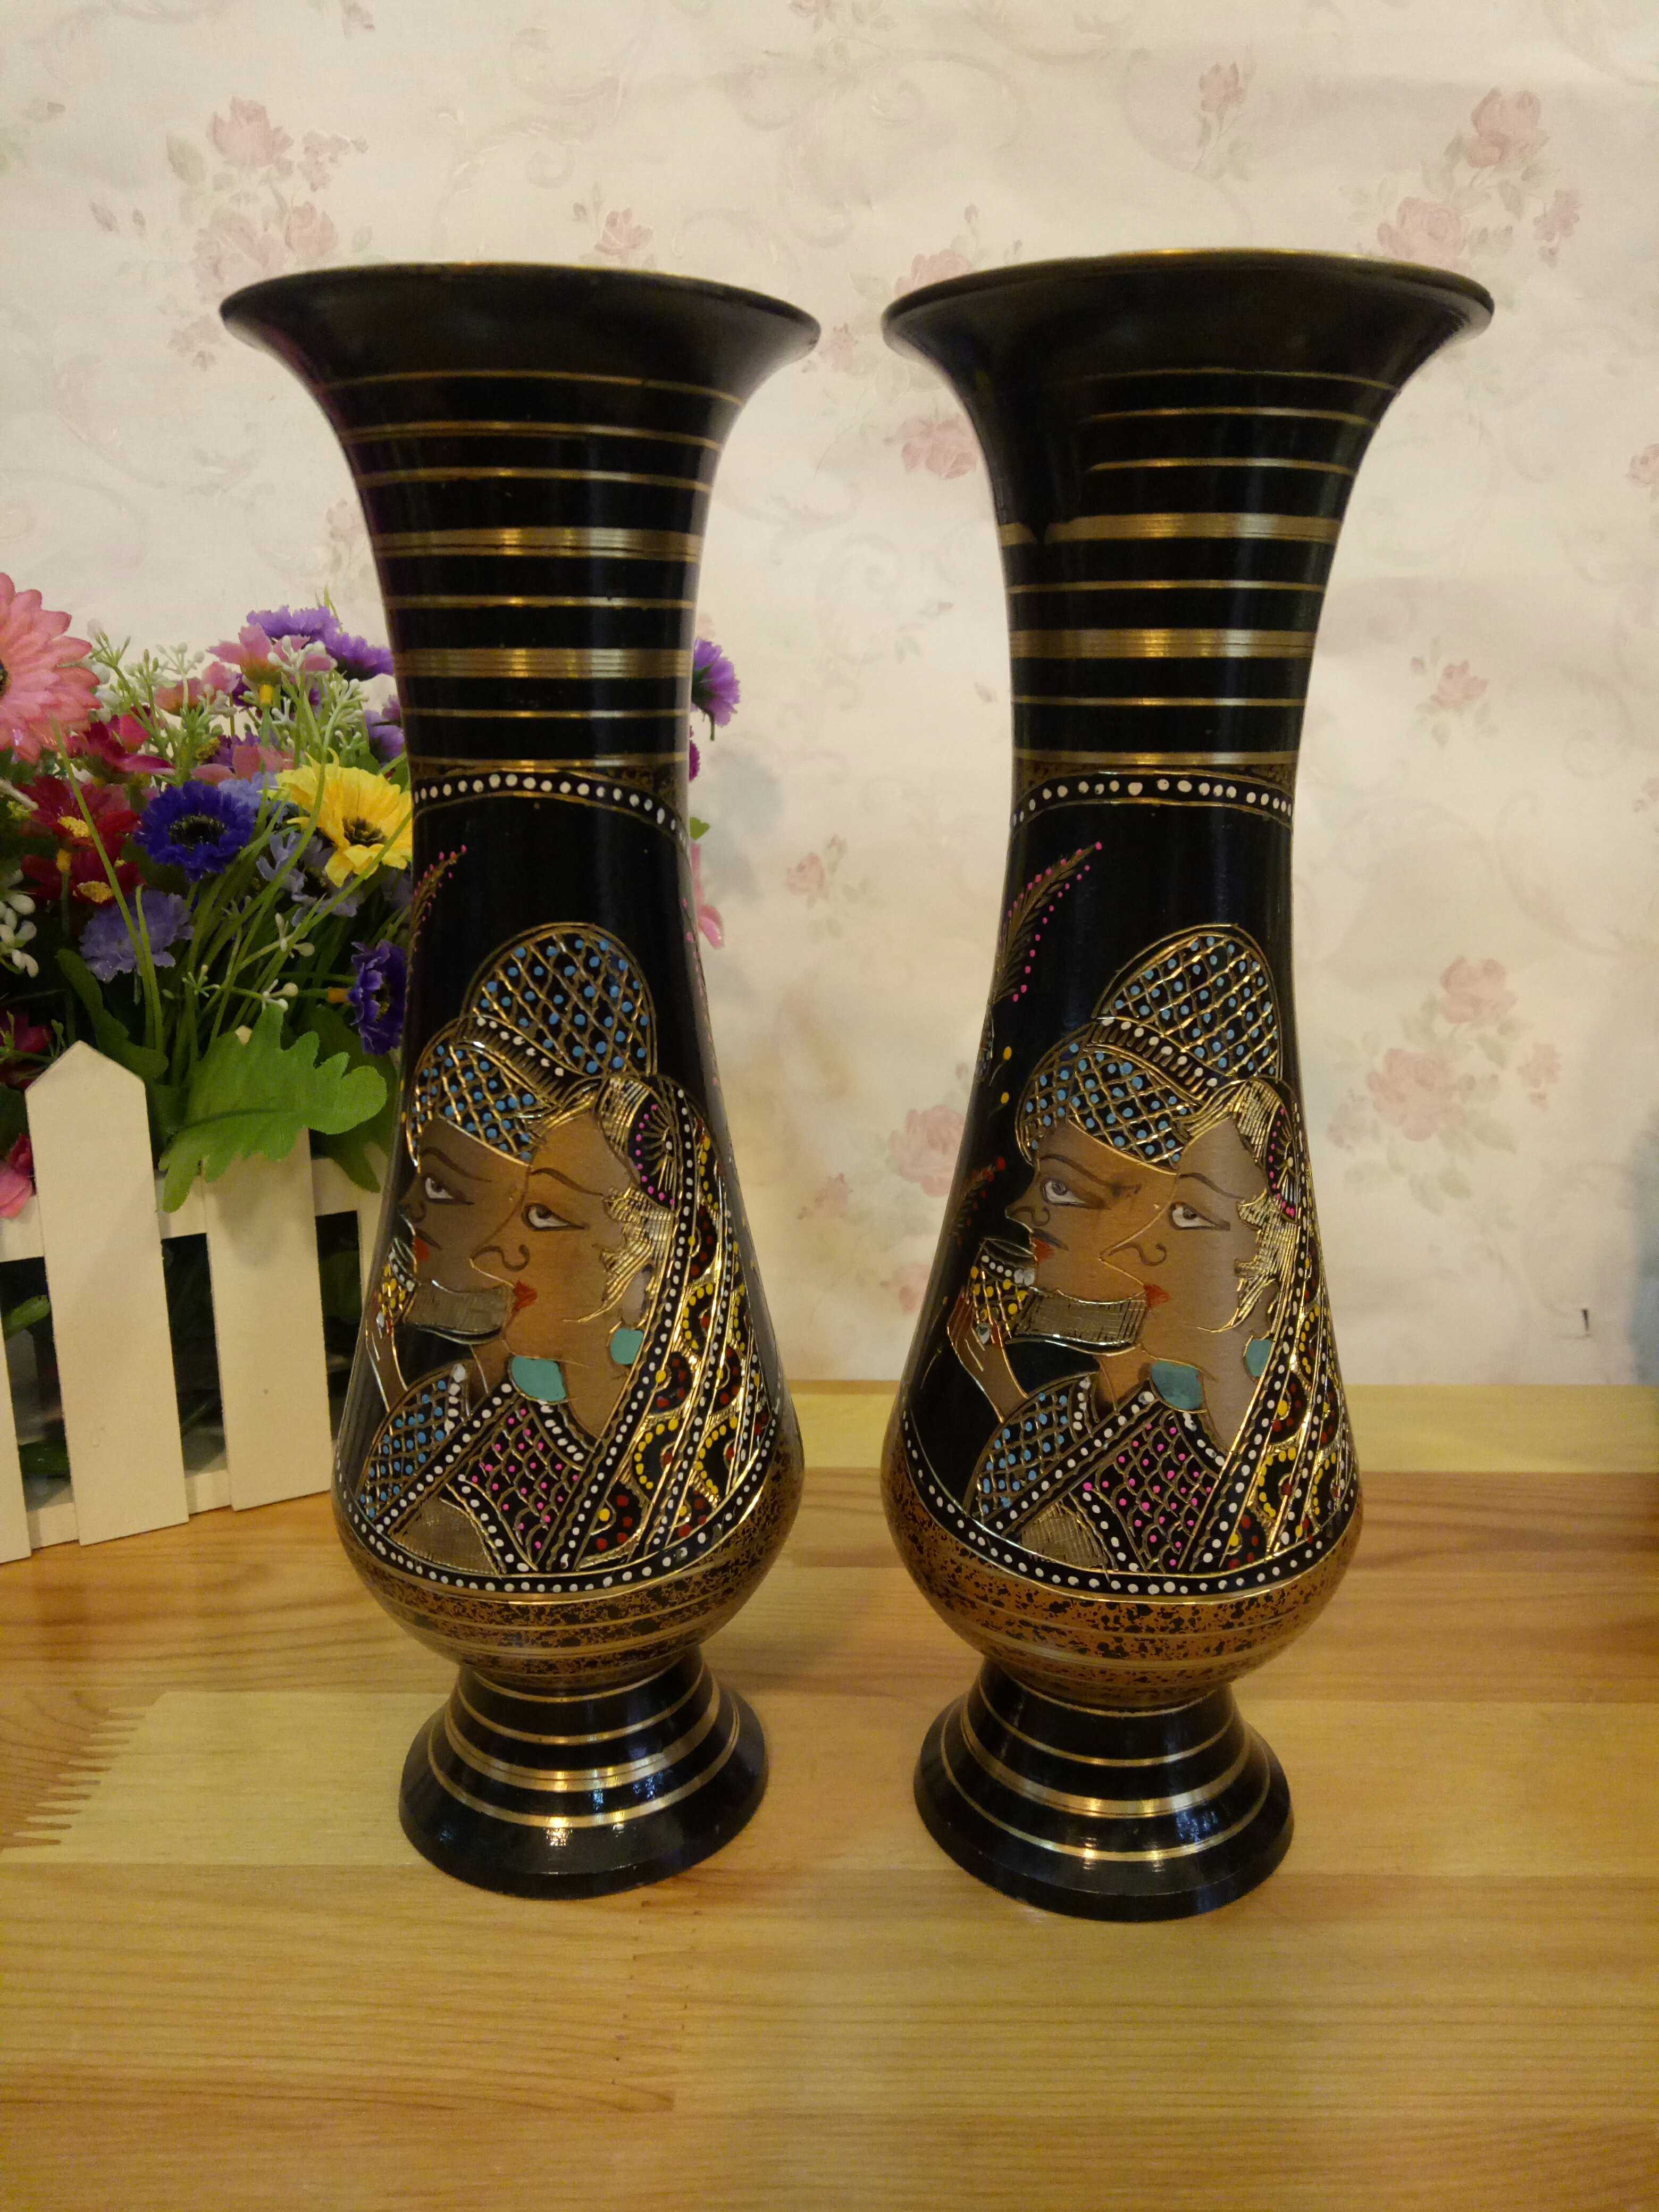 純手工進口銅器巴基斯坦銅雕手工藝品花瓶擺件禮品1入